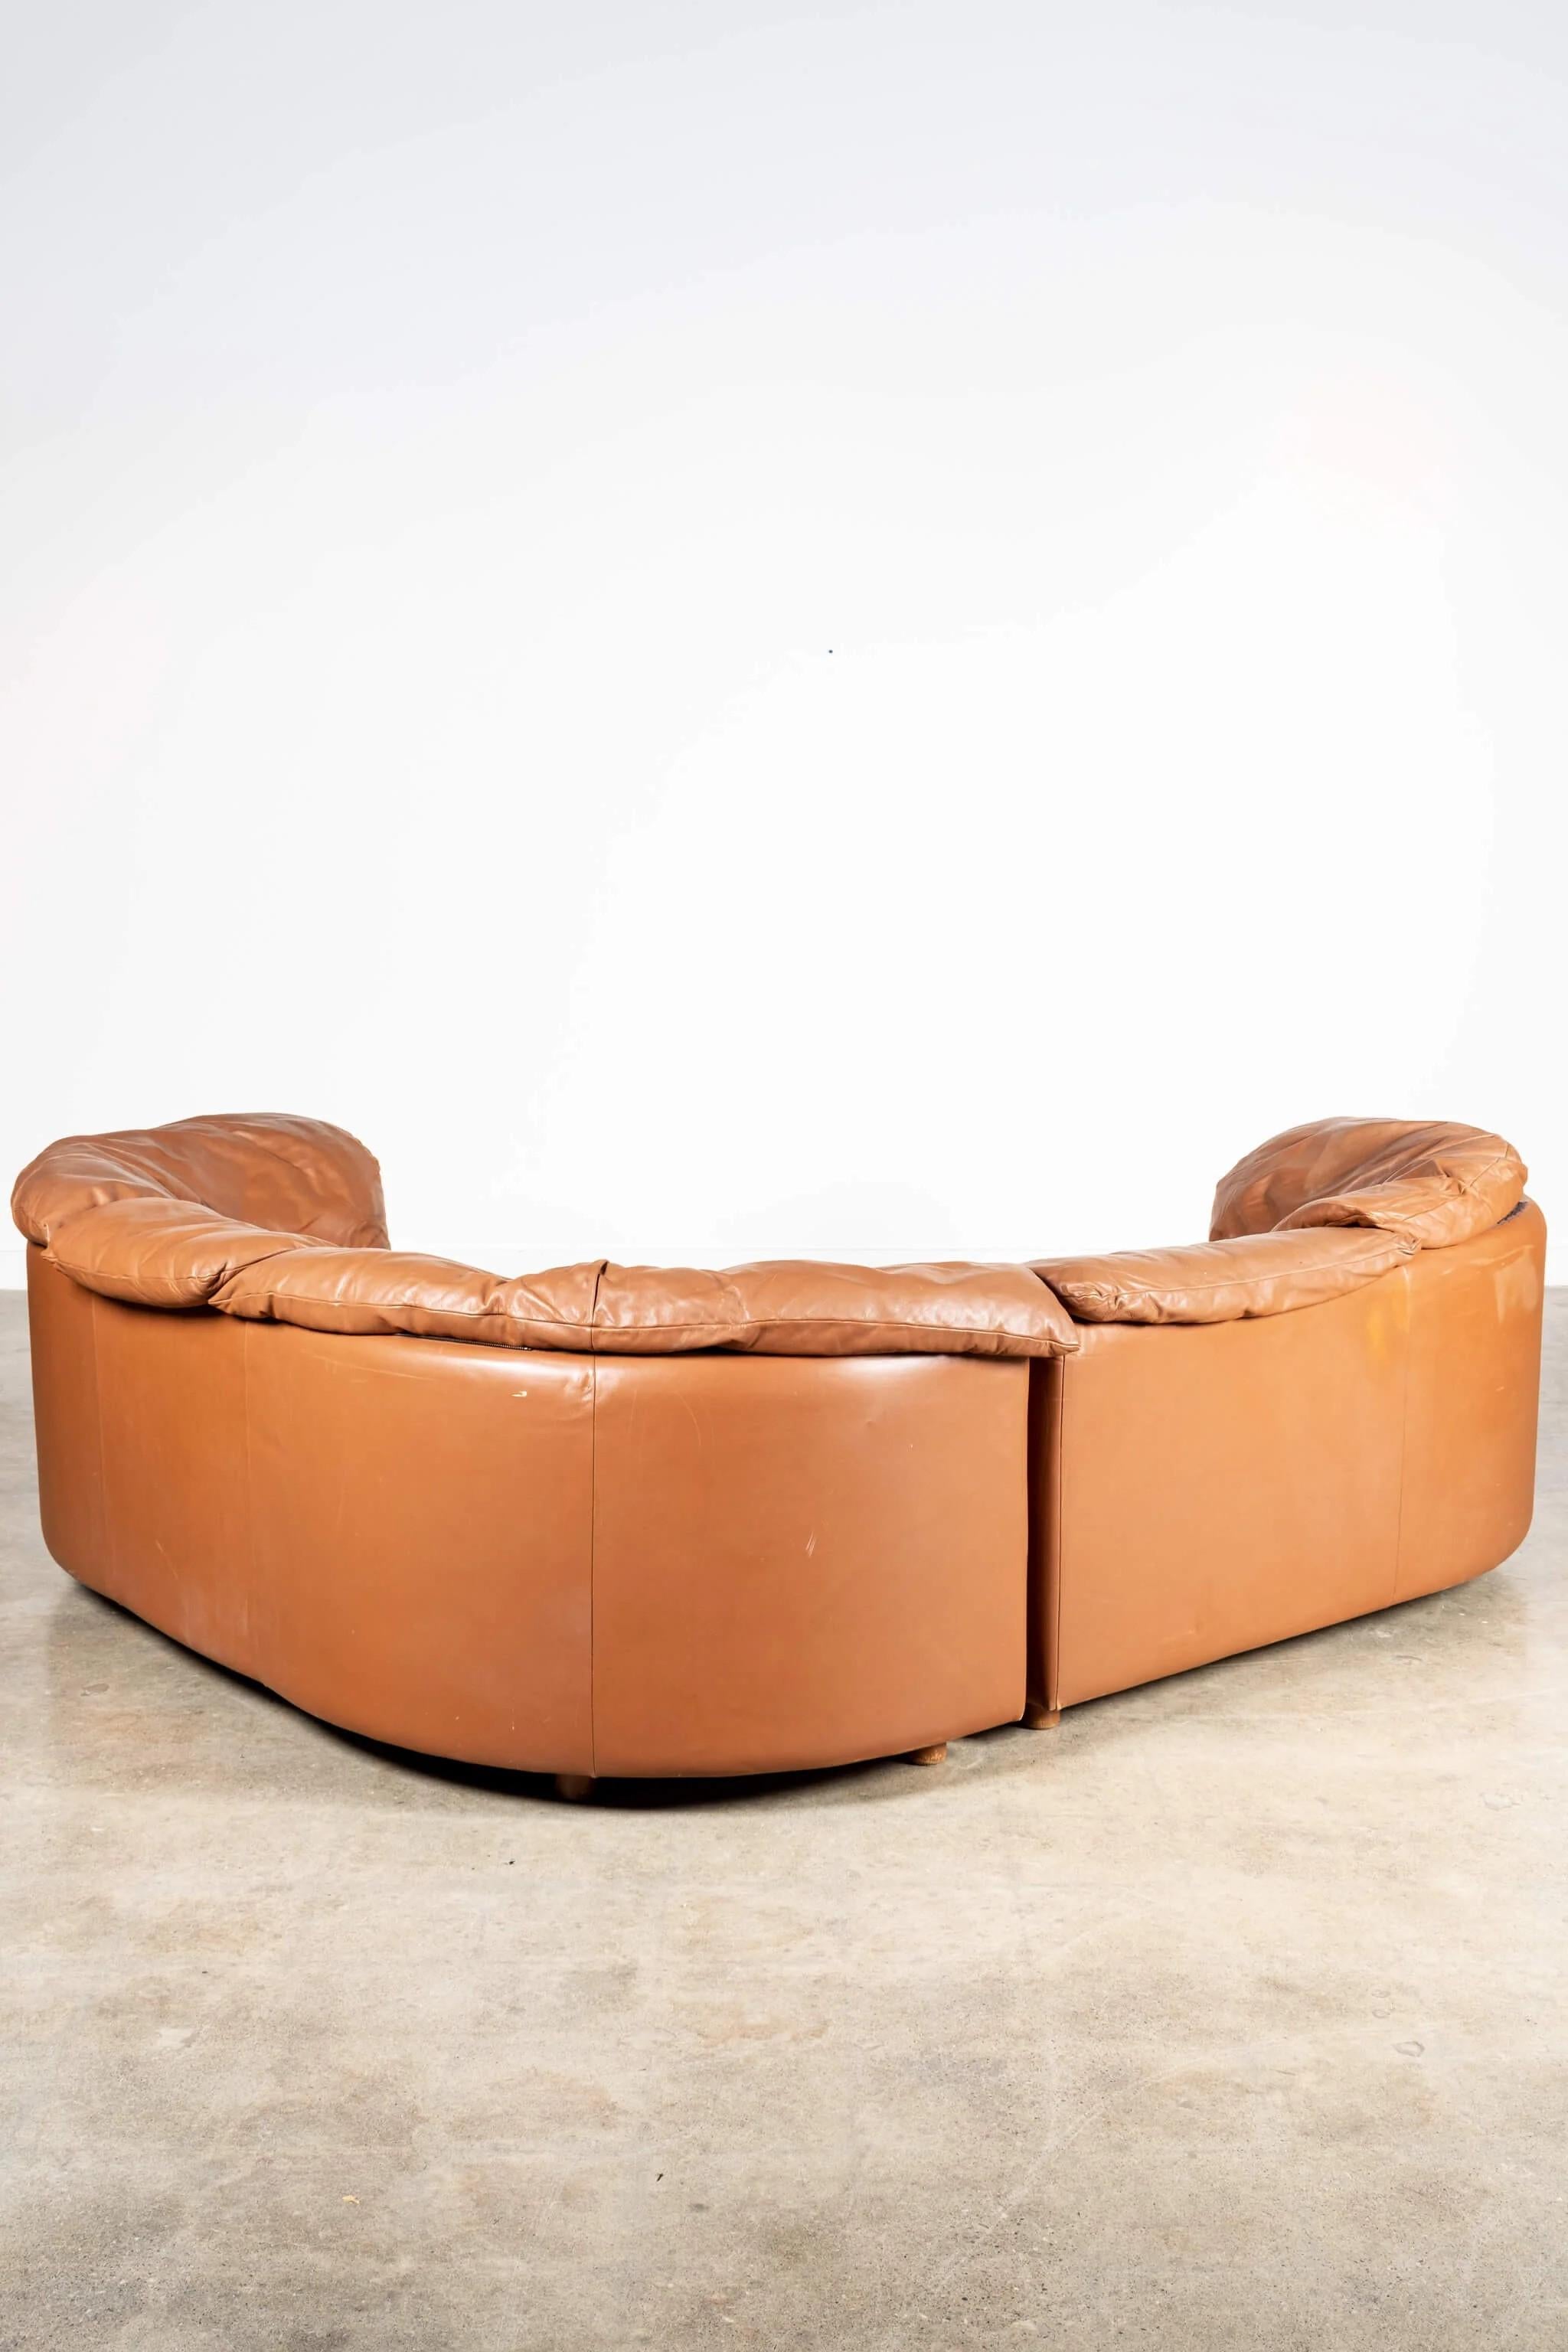 De Sede 1980s 2-Piece Leather Corner Sofa For Sale 7